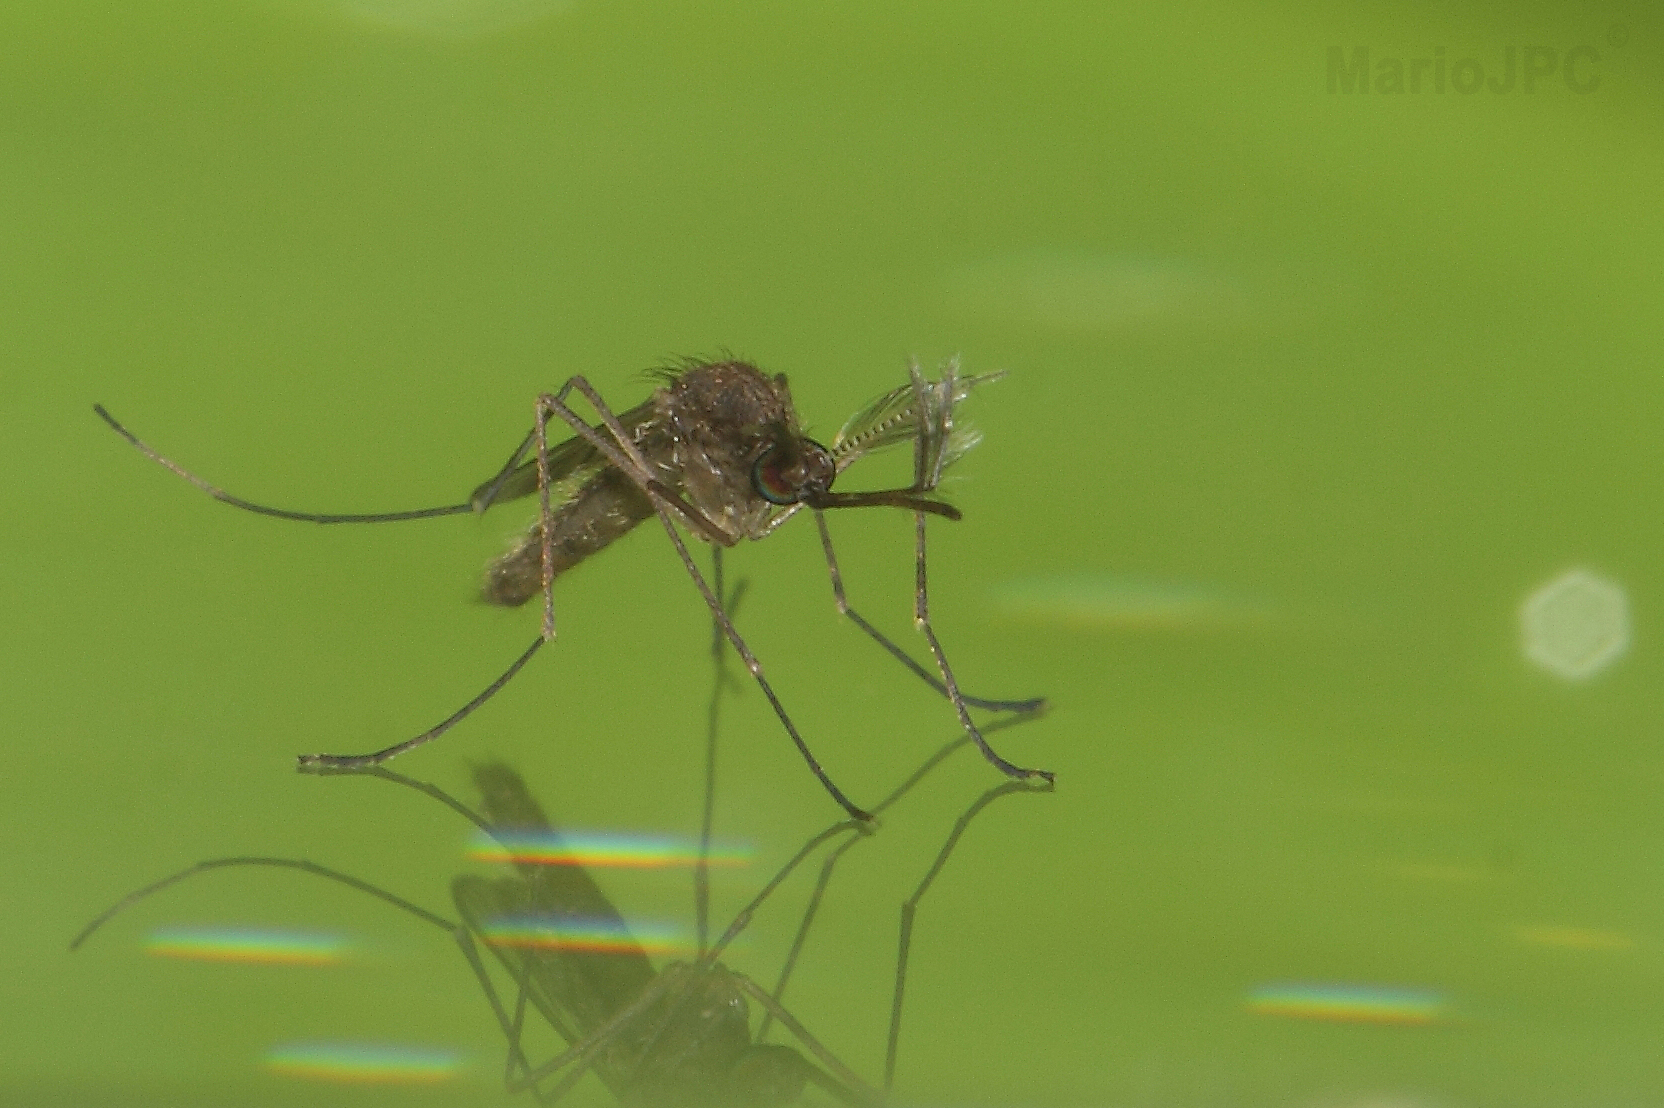 http://www.unex.es/organizacion/servicios/comunicacion/archivo/2014/julio-de-2014/28-de-julio-de-2014/identificadas-7-especies-de-mosquitos-201cresidentes201d-en-badajoz/images/mosquito.png?isImage=1